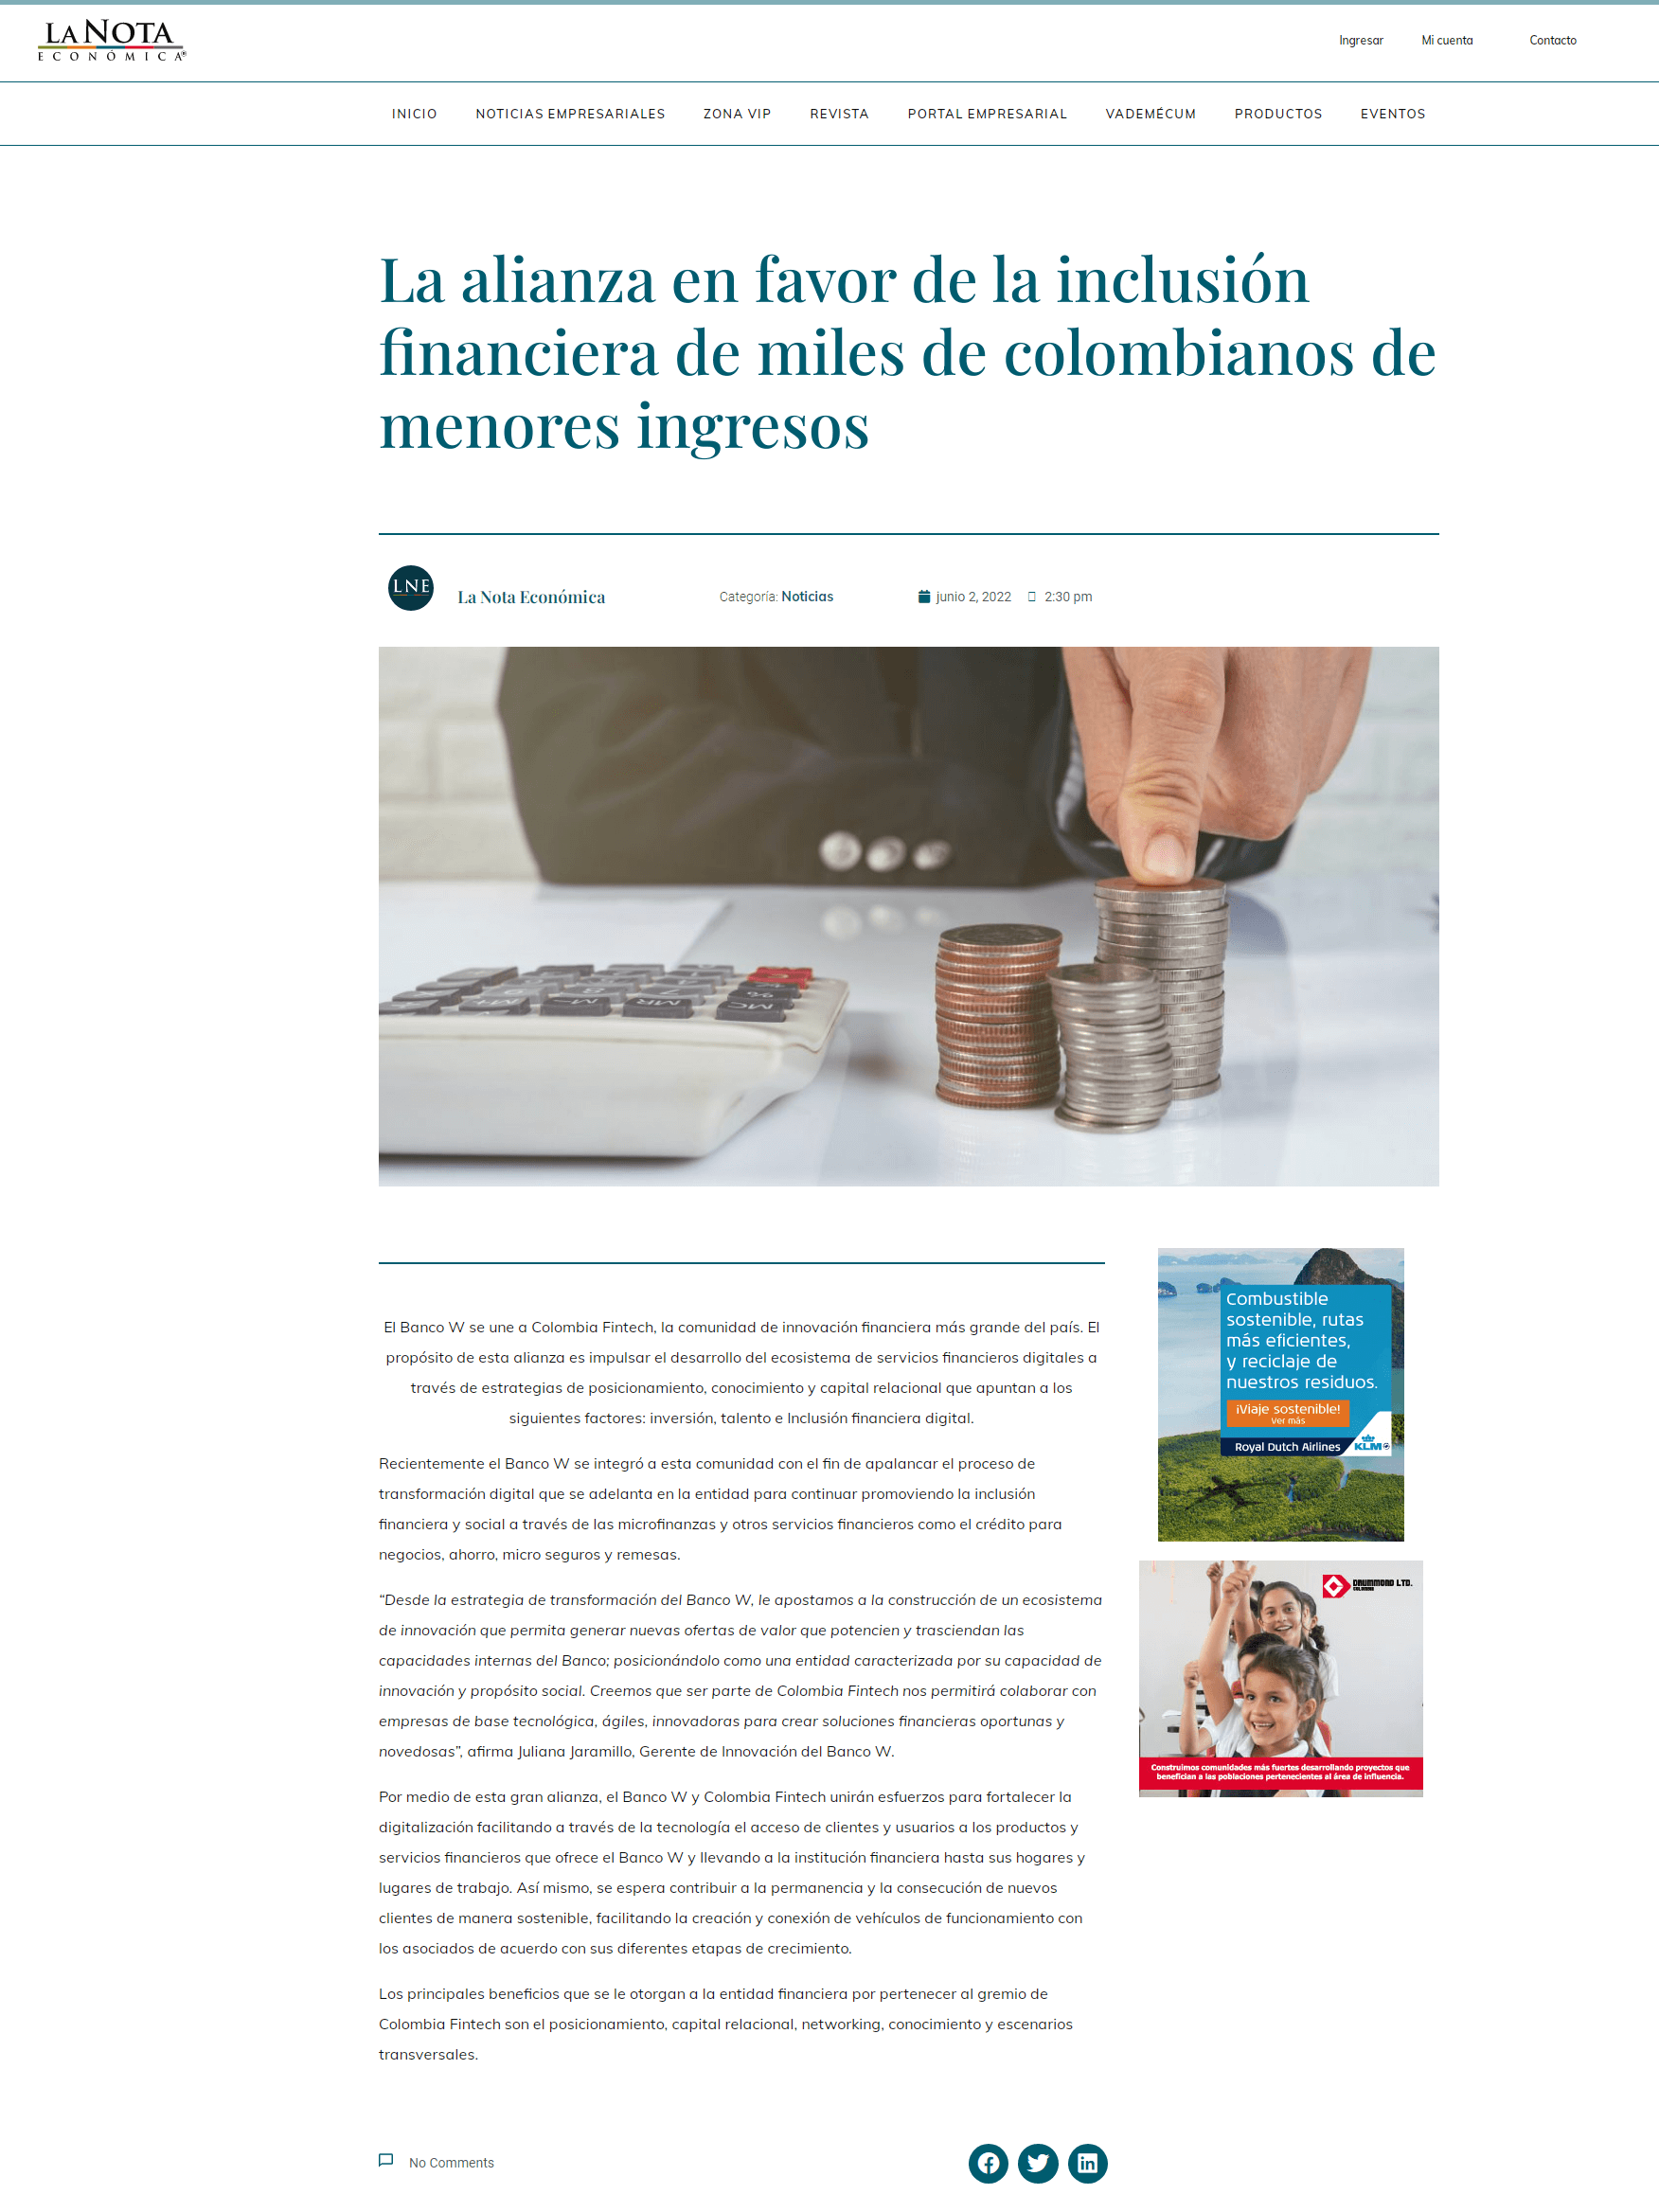 La alianza en favor de la inclusión financiera de miles de colombianos de menos ingresos. Se destaca el ingreso del Banco W a Colombia Fintech.